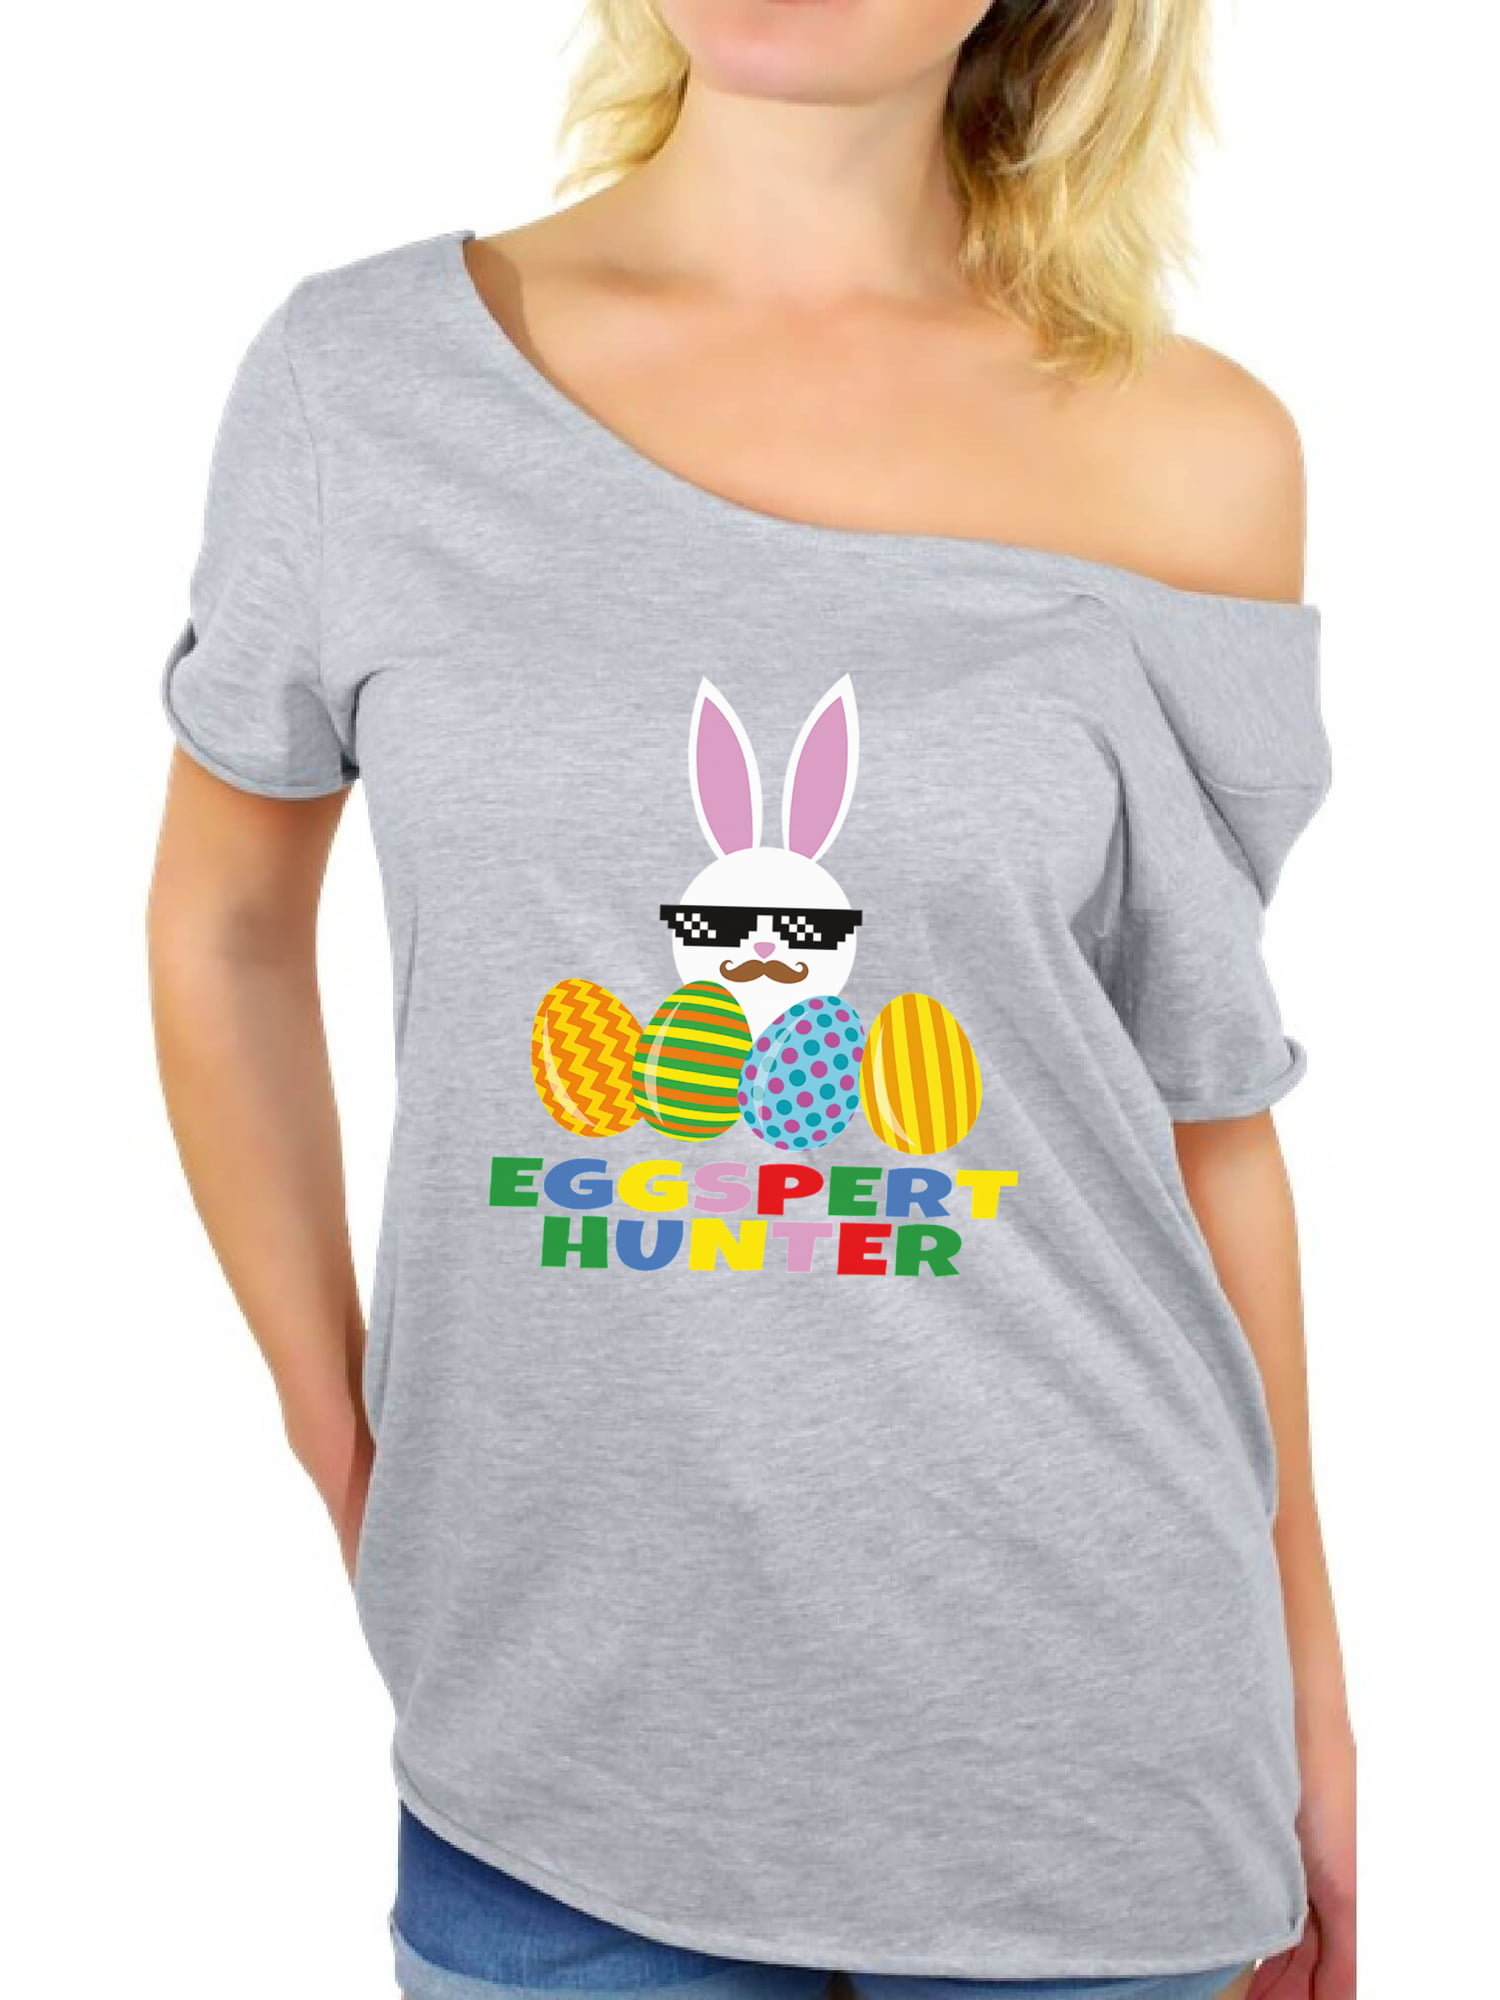 Awkward Styles Eggspert Hunter Off Shoulder Shirt Easter T Shirt Women ...